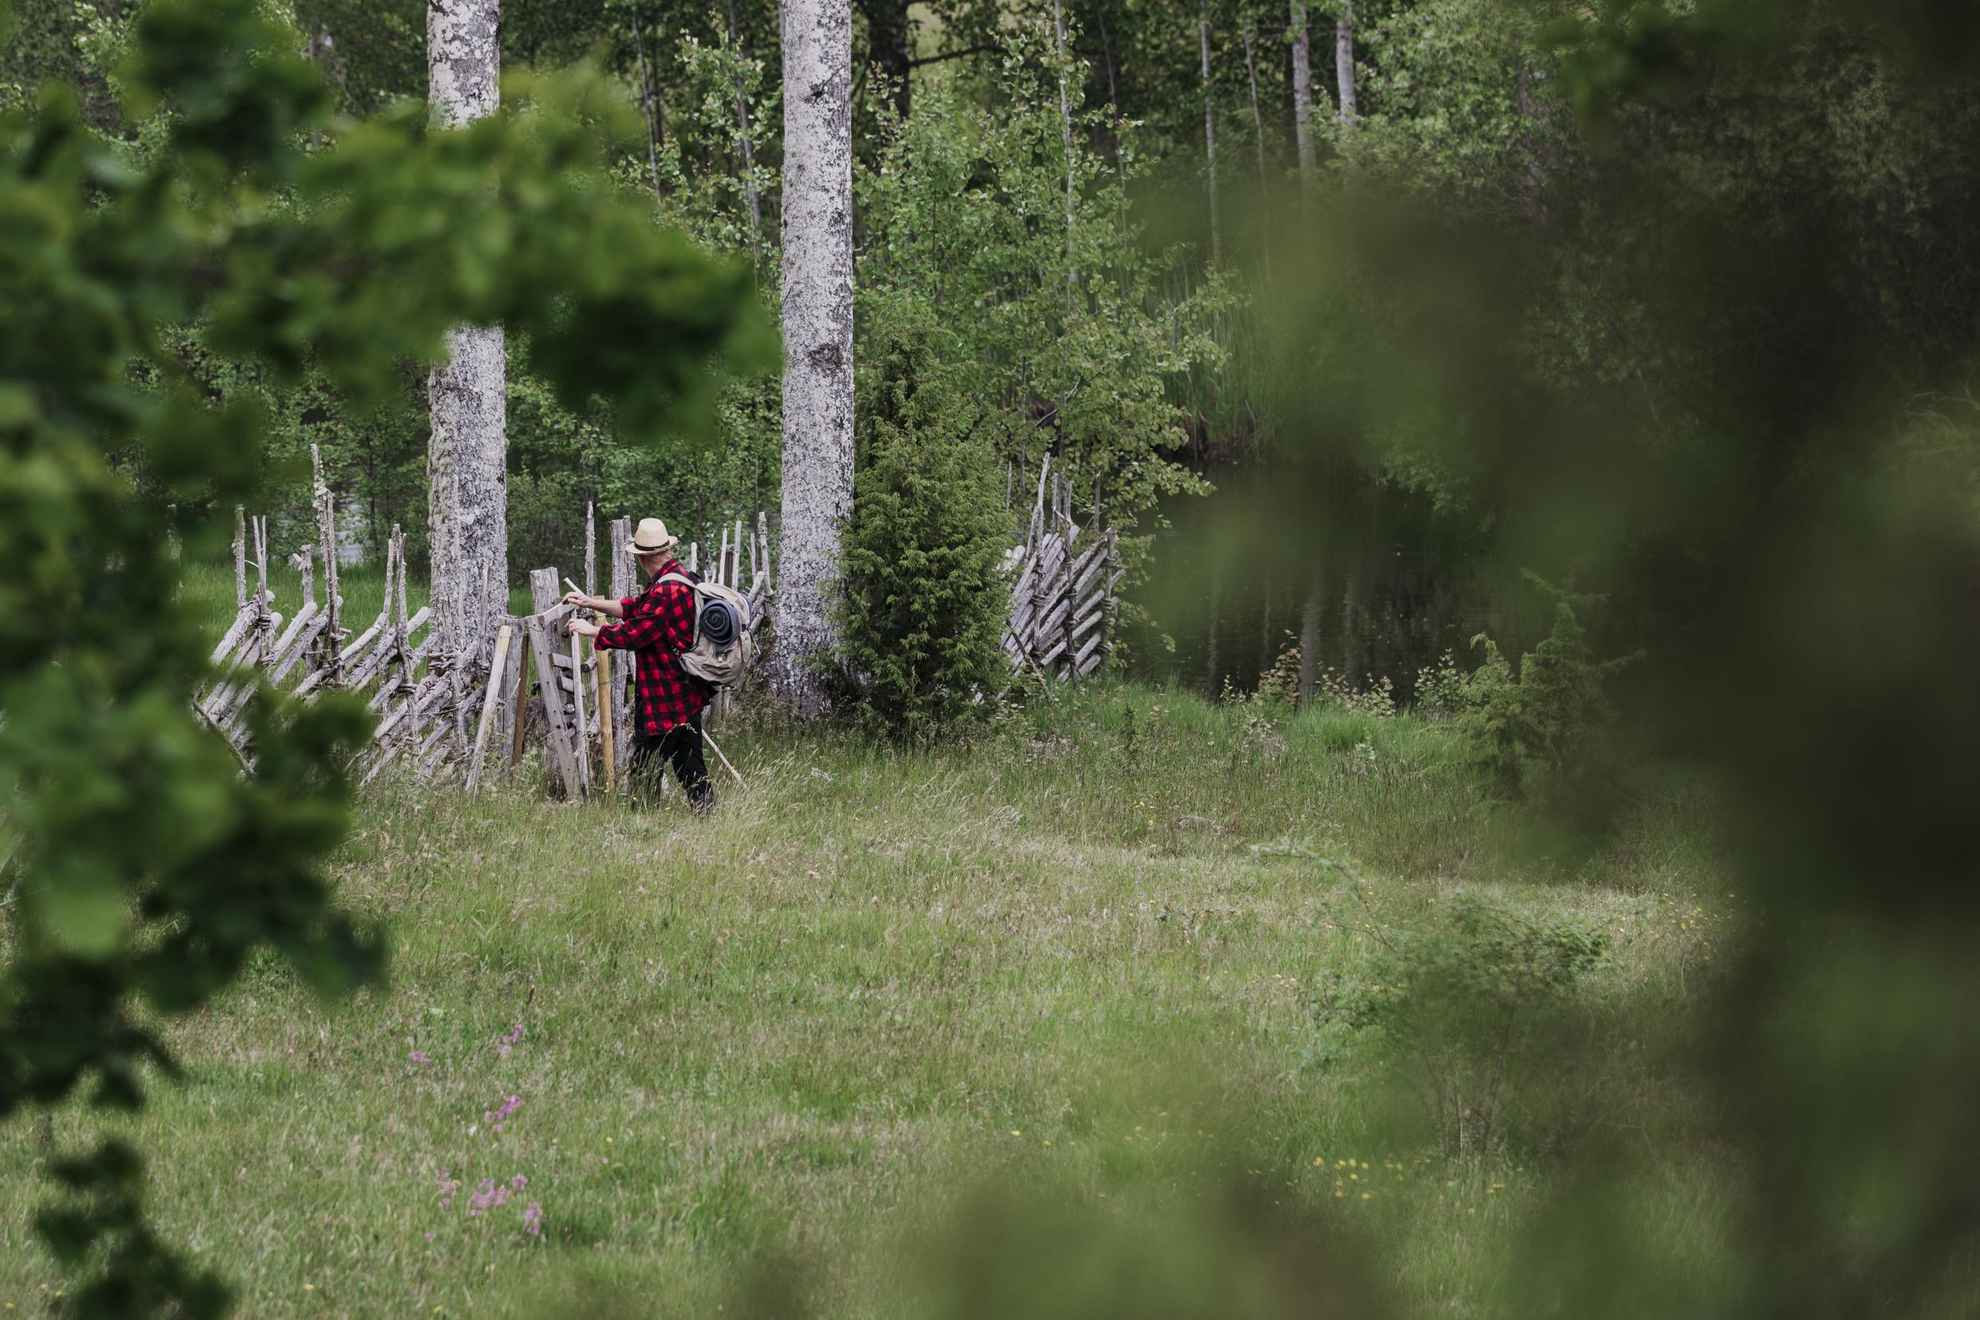 Een man met een rugzak opent een poort in een hek op een wandelpad in de natuur dicht bij een bos.